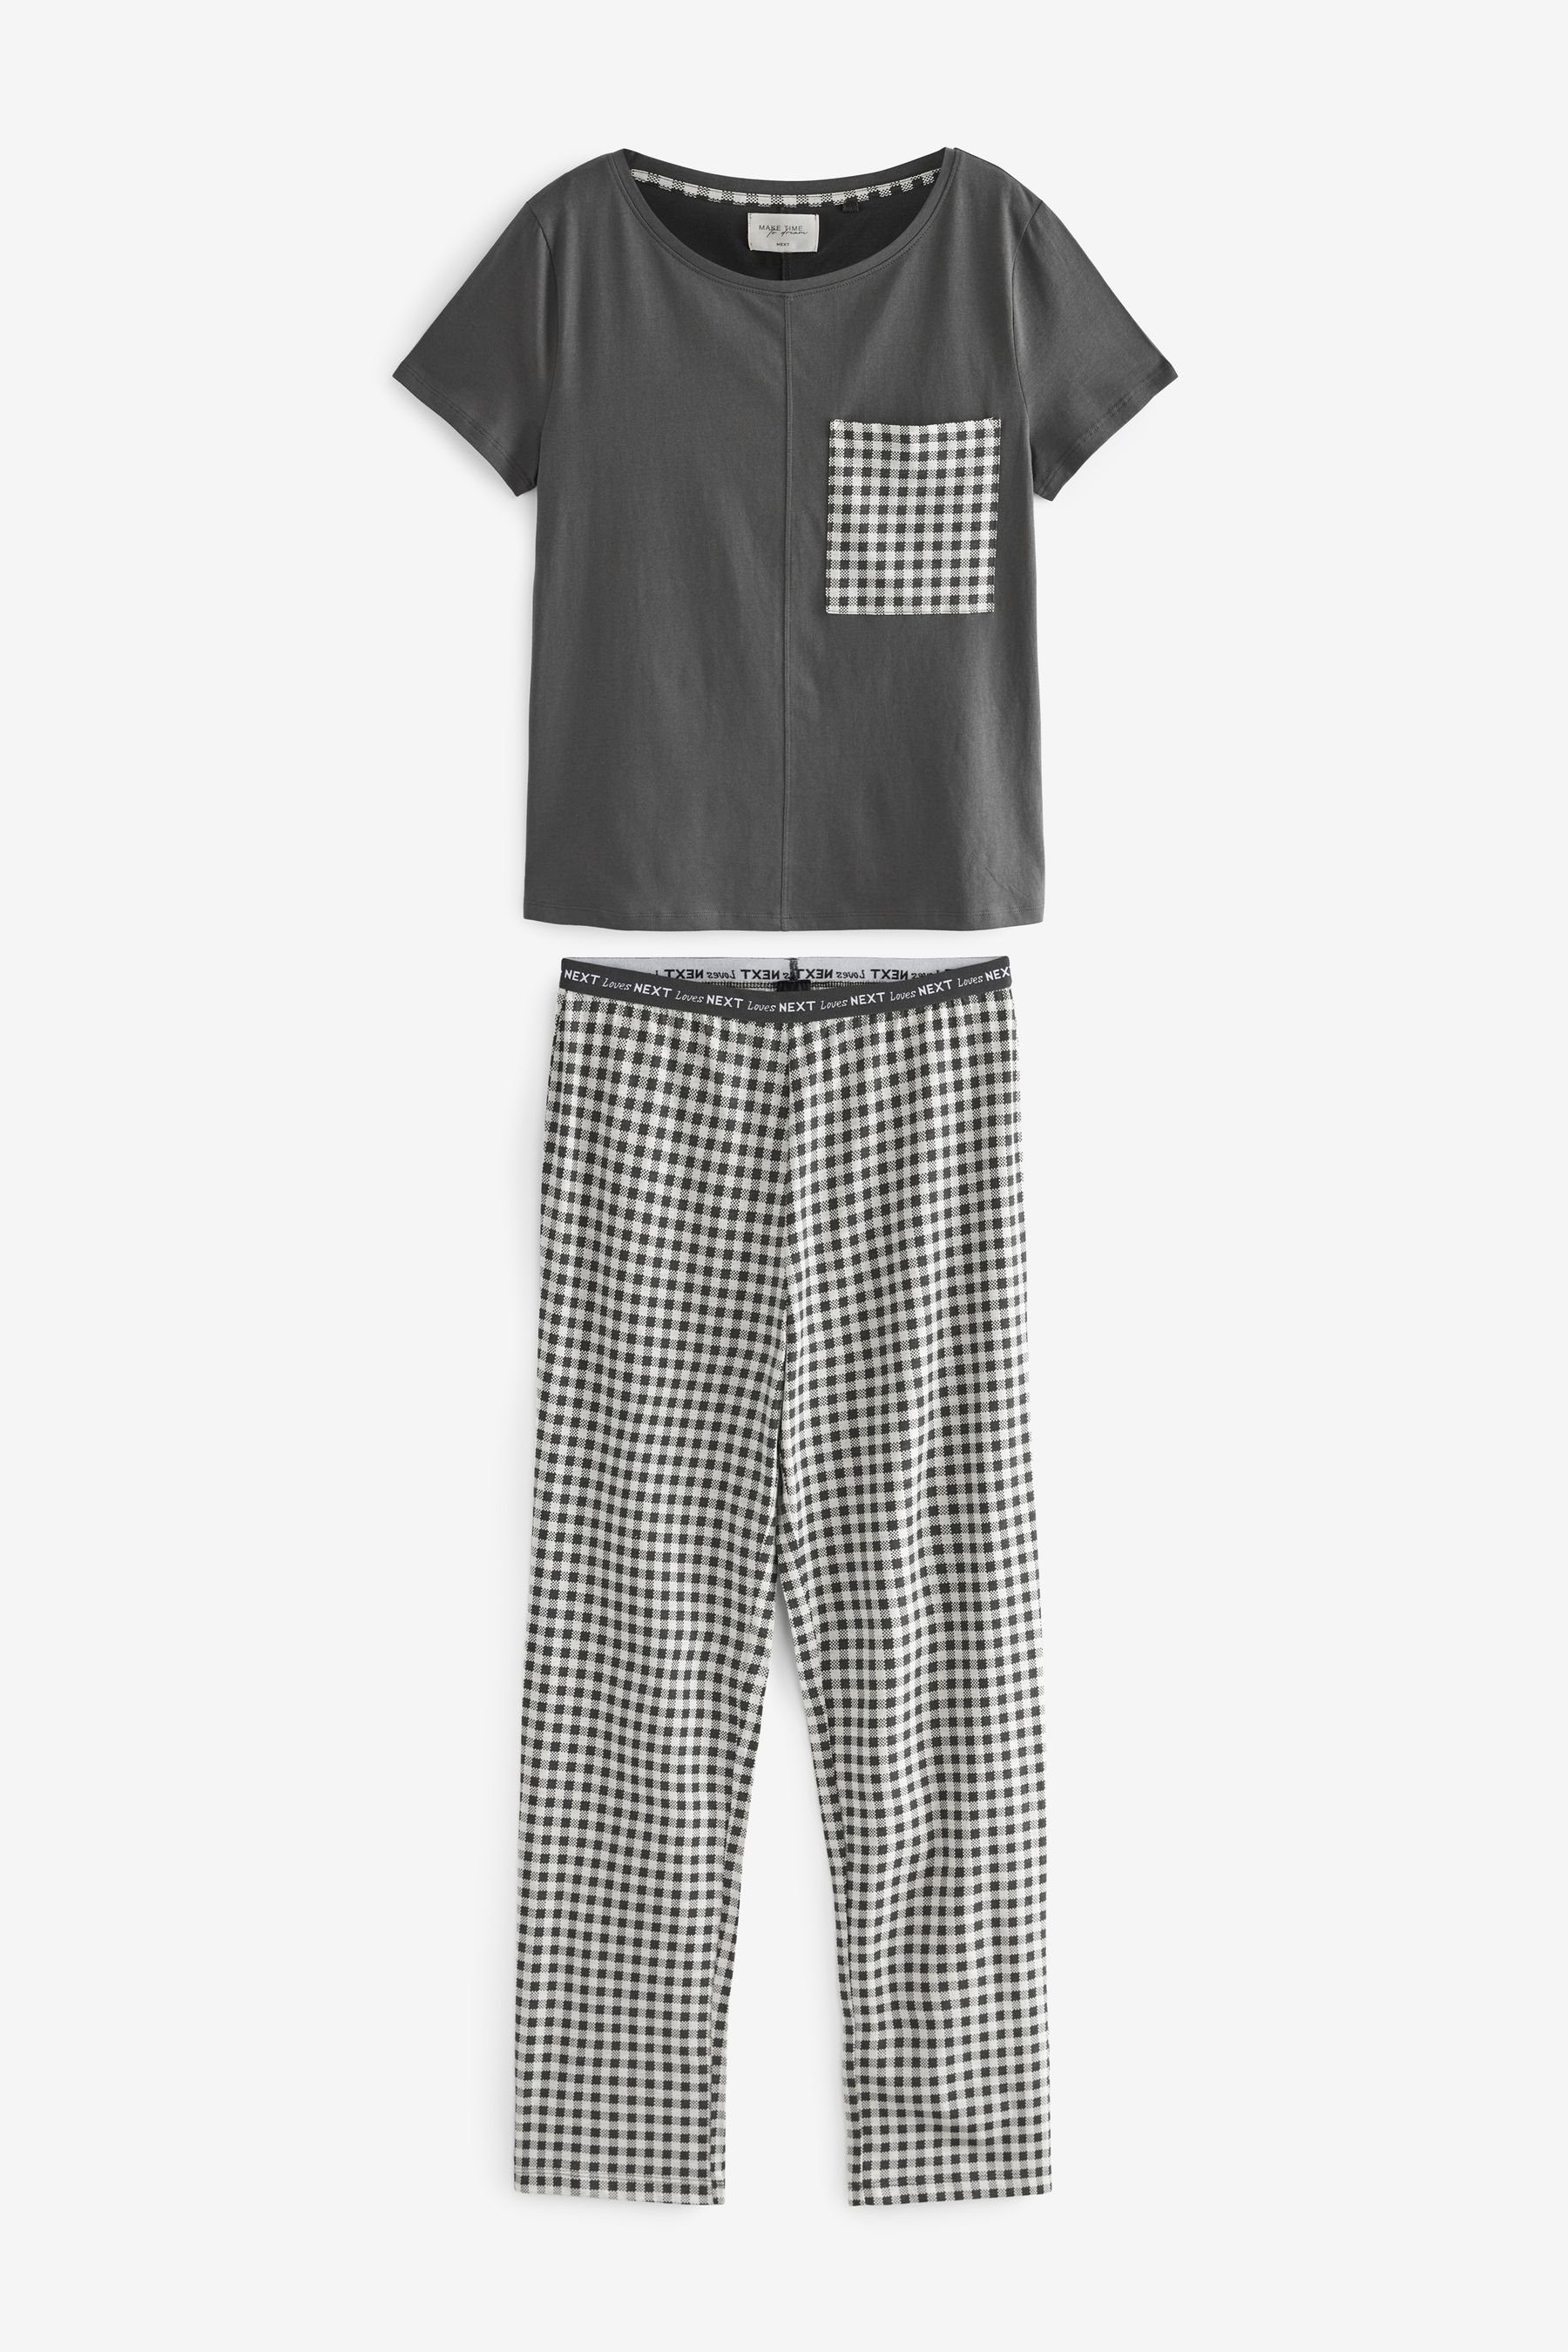 tlg) Baumwoll-Schlafanzug. Pyjama (2 Next